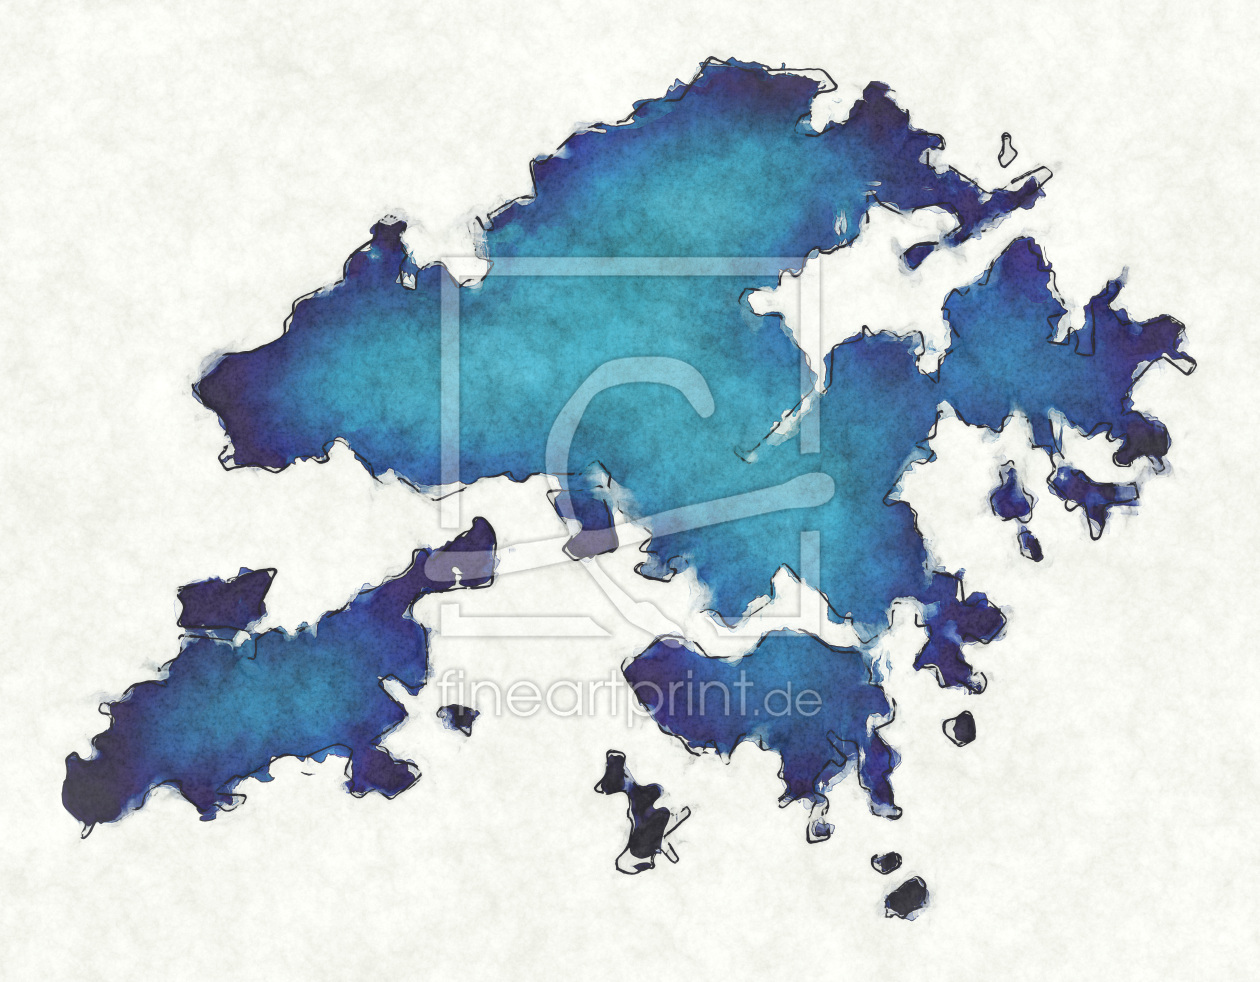 Bild-Nr.: 12418081 Hongkong Landkarte in blauen Wasserfarben erstellt von imenhard